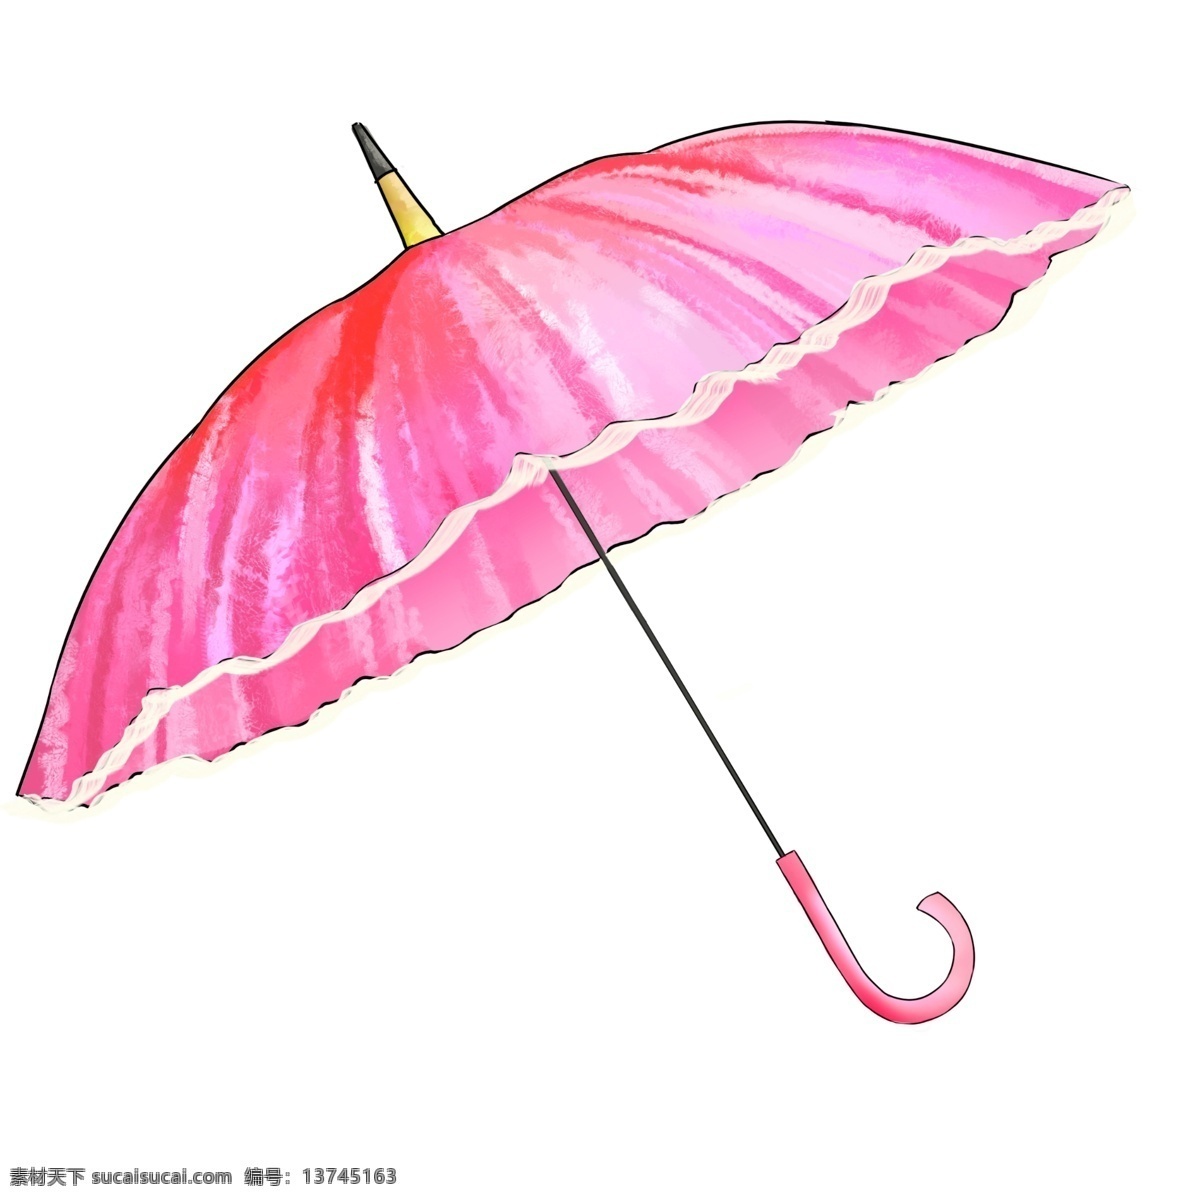 遮阳伞 雨伞 粉色 淑女 蕾丝 阳伞 公主 下雨 雨天 雨季 传统 工艺 手作 黄梅 江南